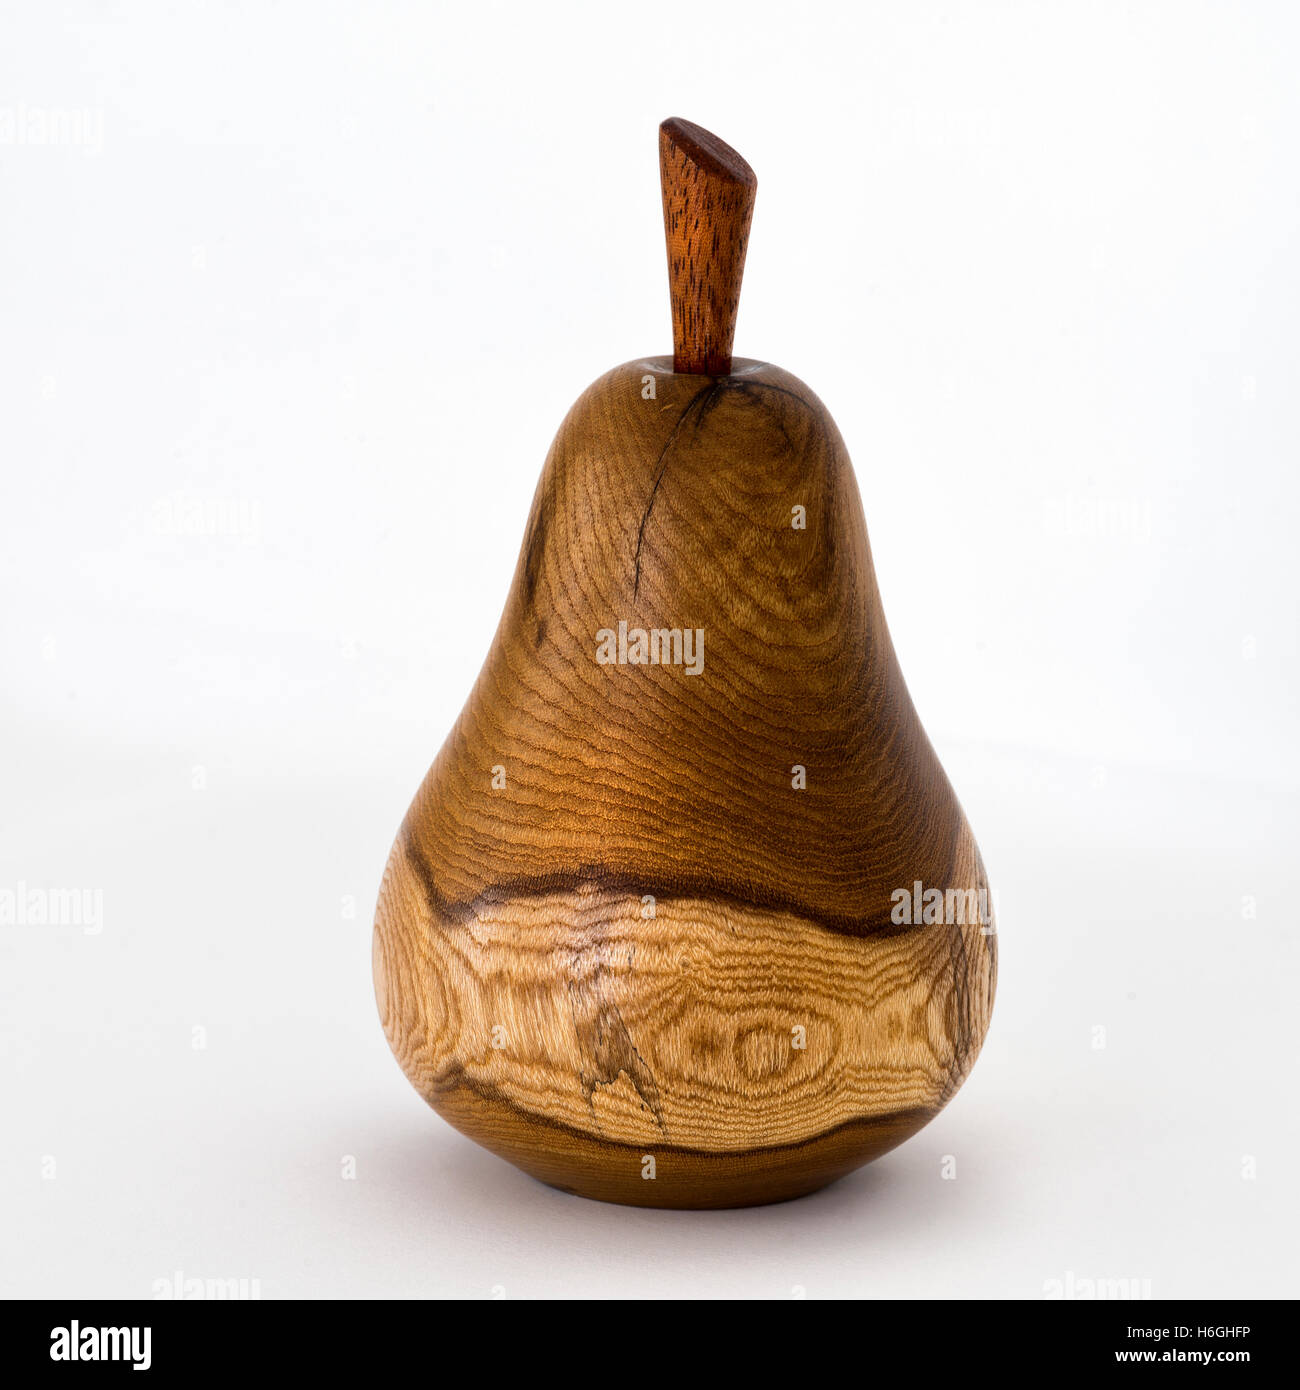 Altamente lucido legno bello girato pera frutto da John Stafford, Devon legno-turner Foto Stock